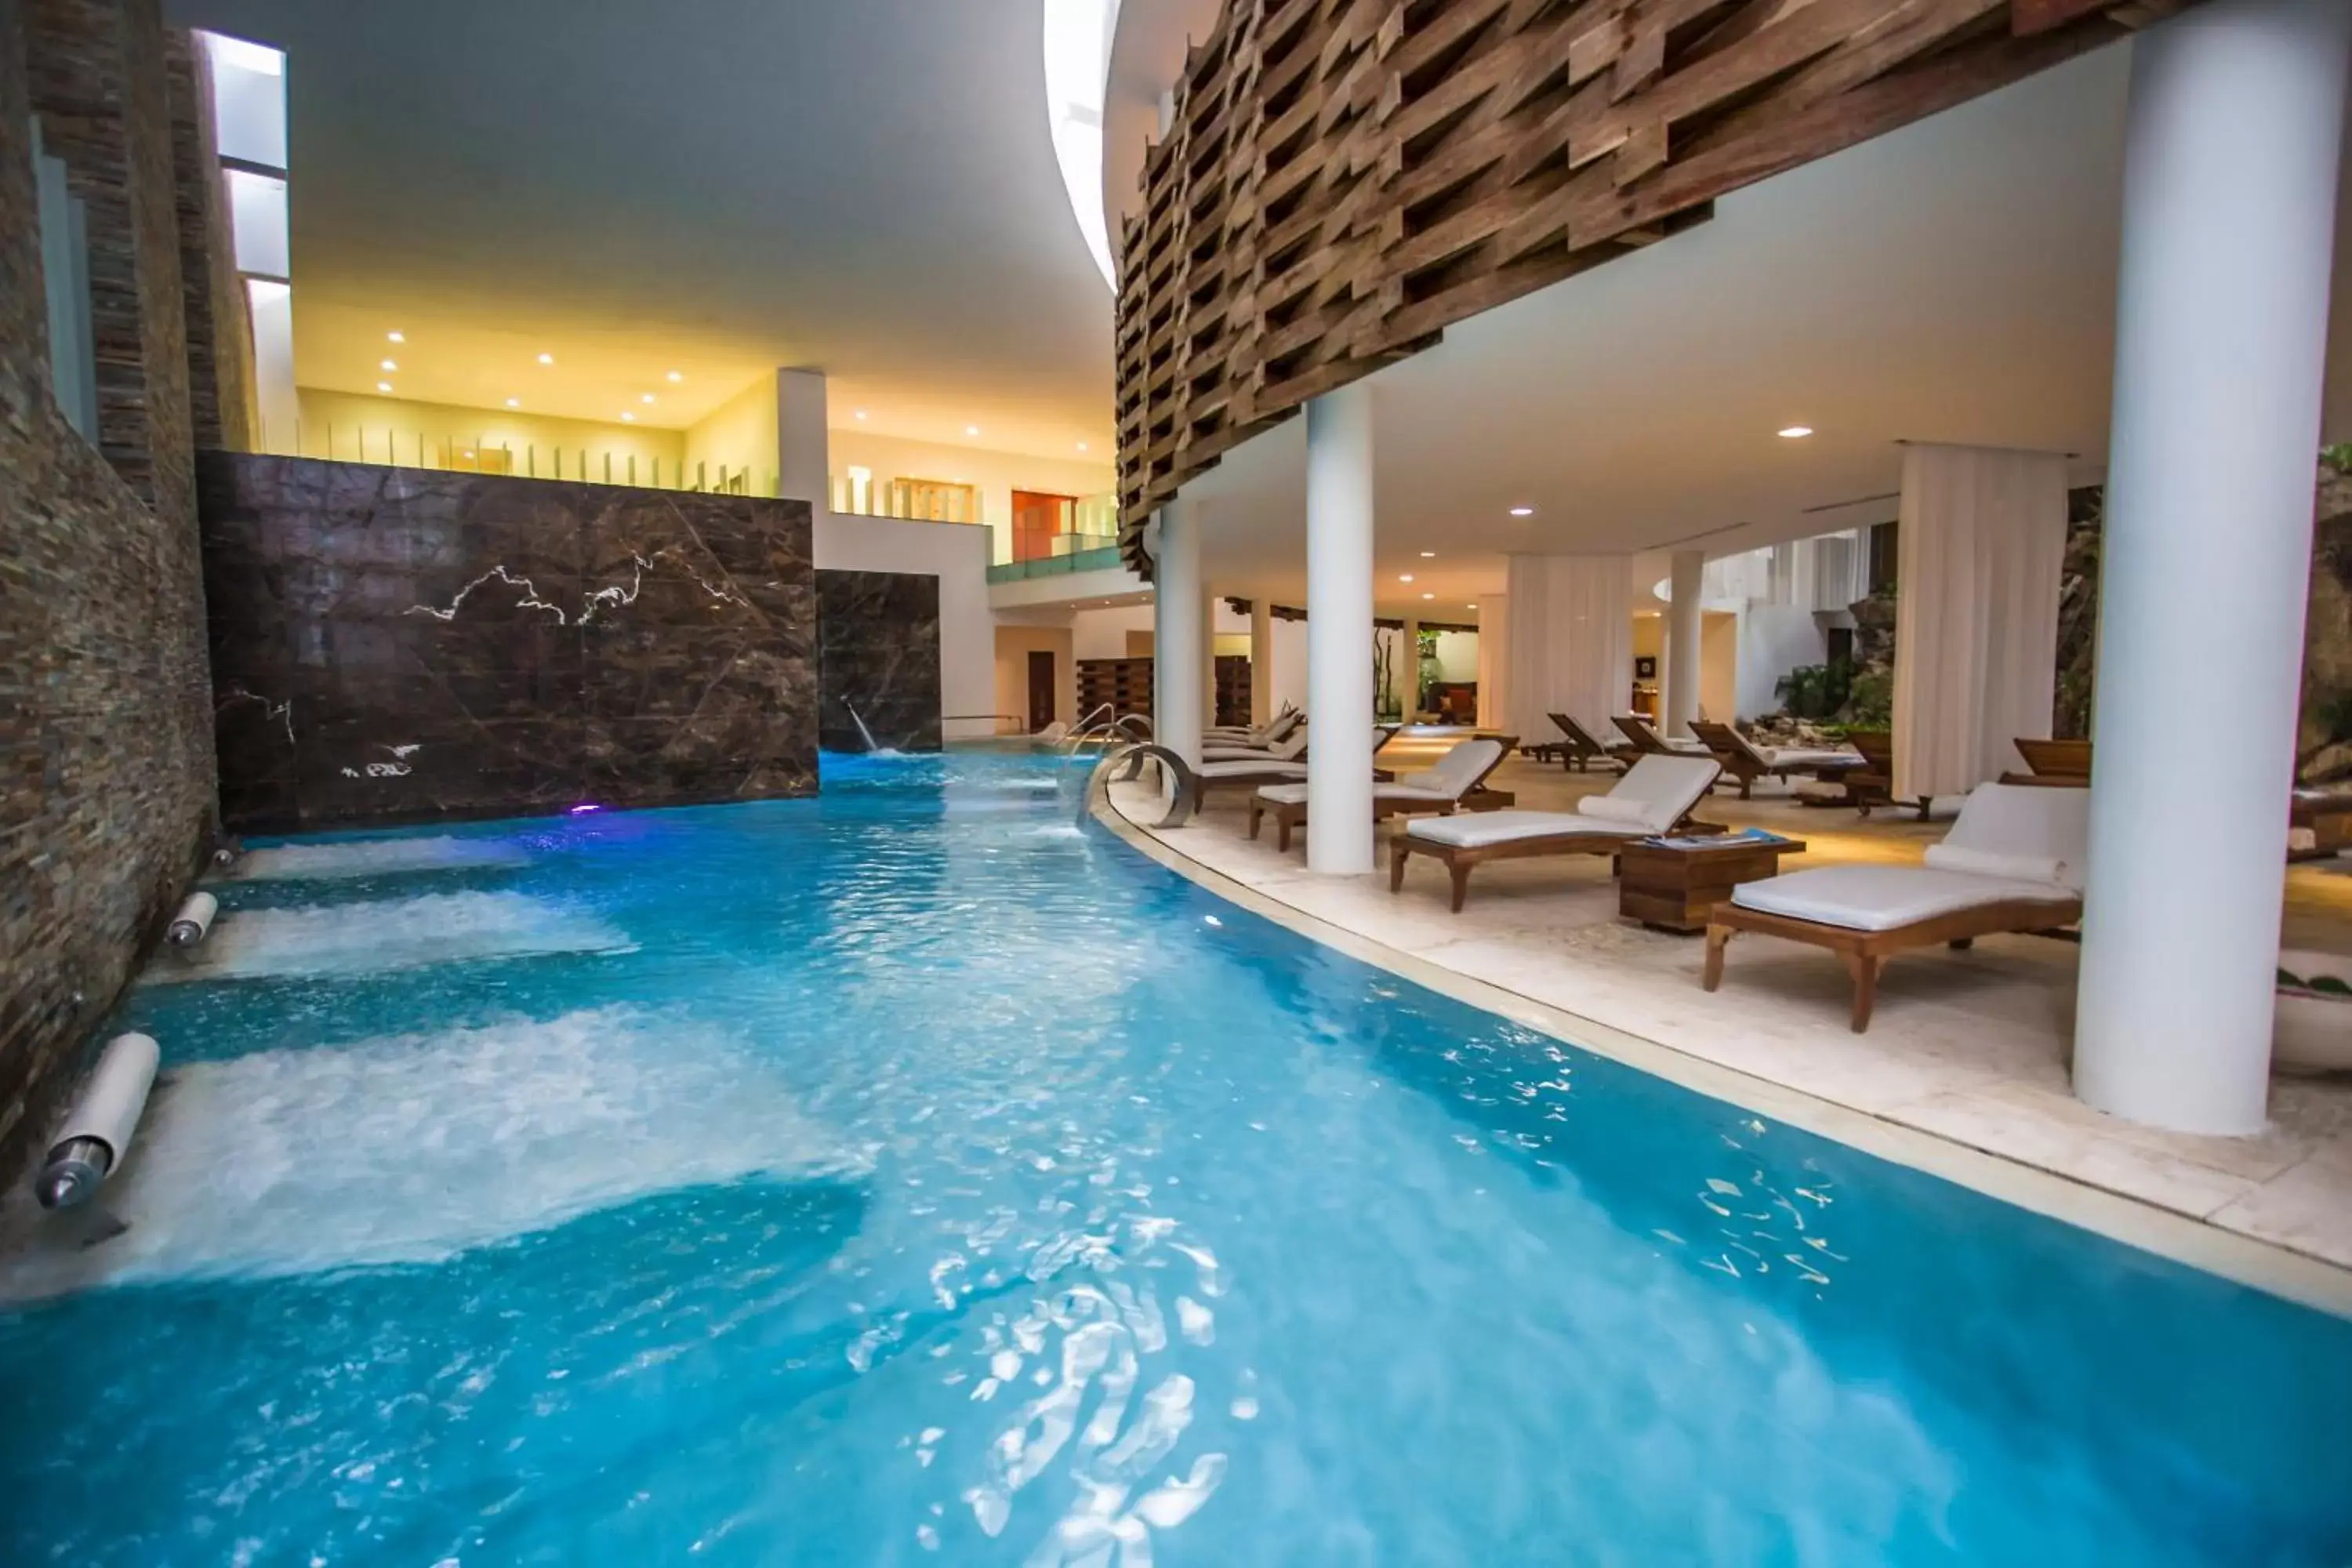 Public Bath, Swimming Pool in Grand Velas Riviera Maya - All Inclusive